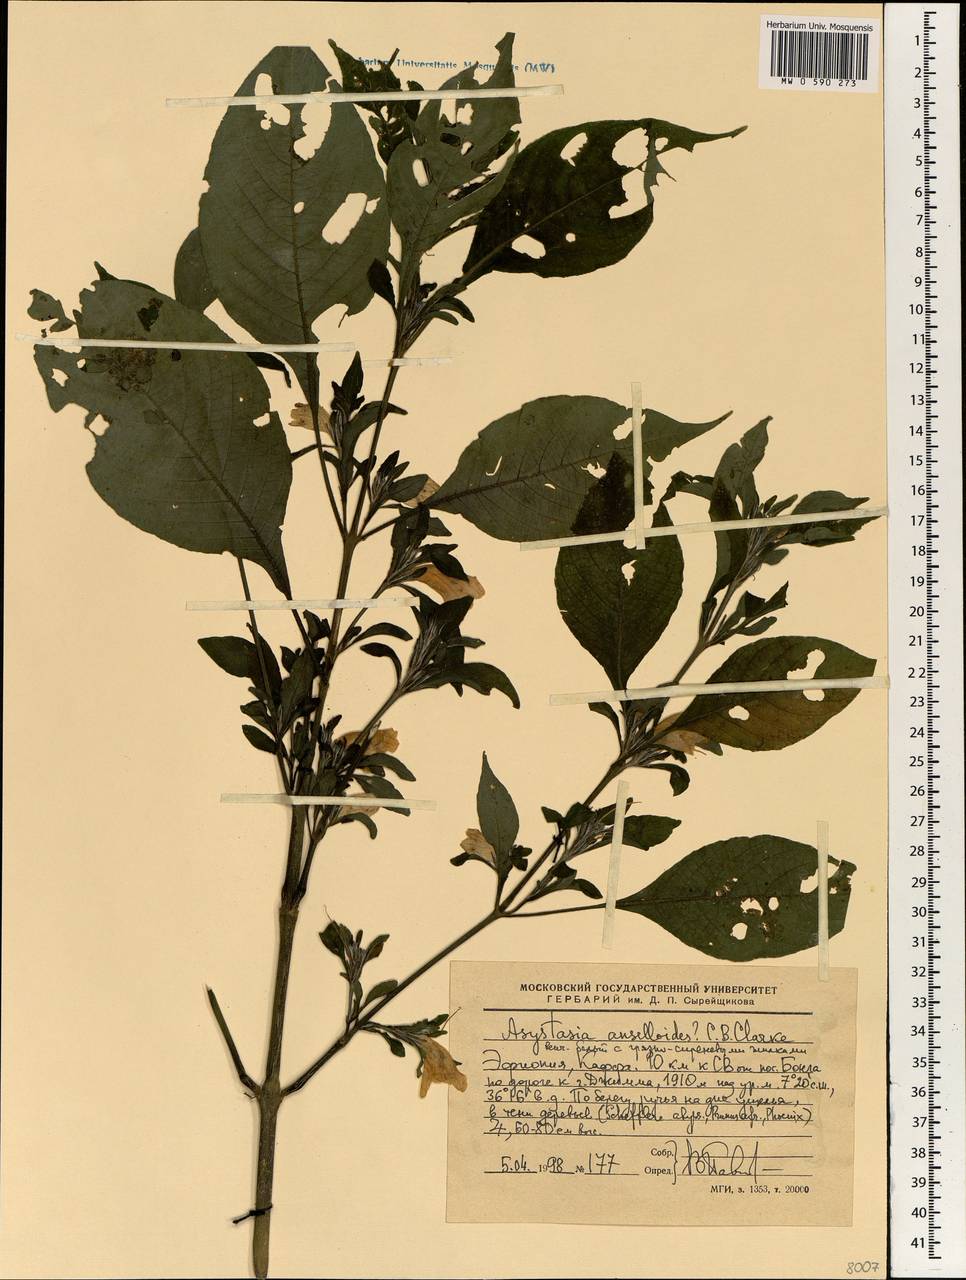 Asystasia ansellioides C. B. Cl., Africa (AFR) (Ethiopia)